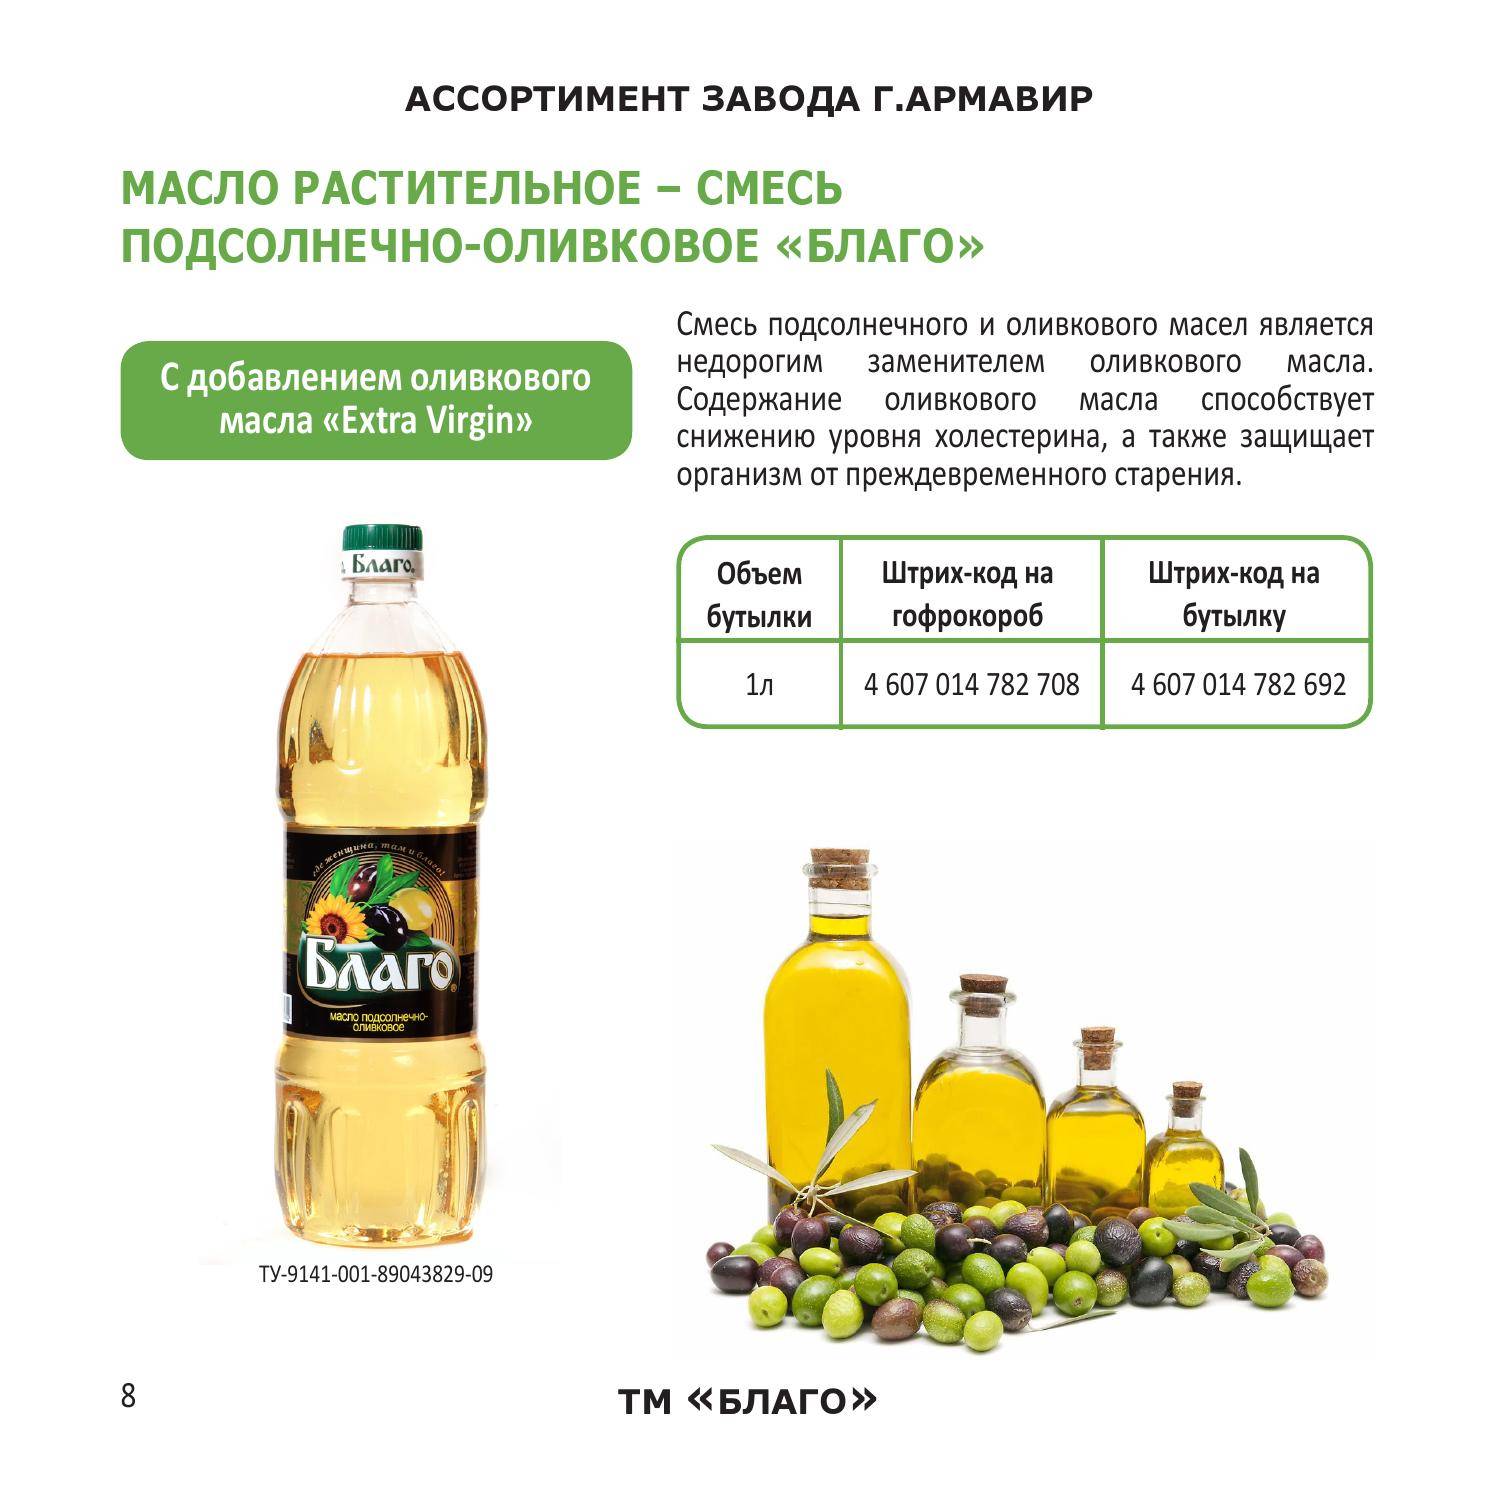 Что полезнее: оливковое масло или подсолнечное масло? свойства, противопоказания, особенности применения